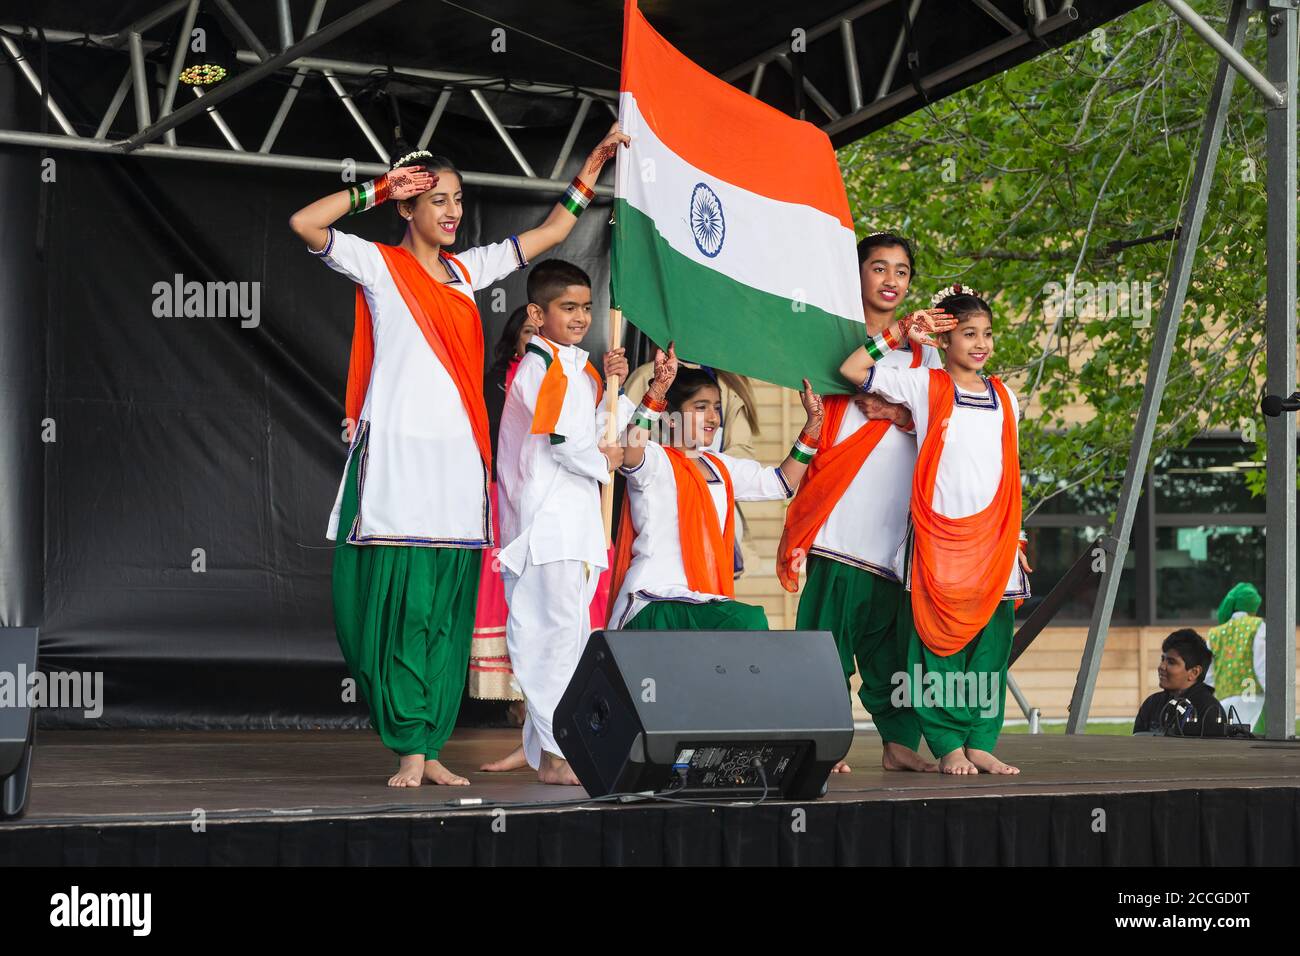 Un groupe d'Indiens portant leurs couleurs nationales, portant le drapeau indien et saluant. Tauranga, Nouvelle-Zélande, 10/25/2019 Banque D'Images